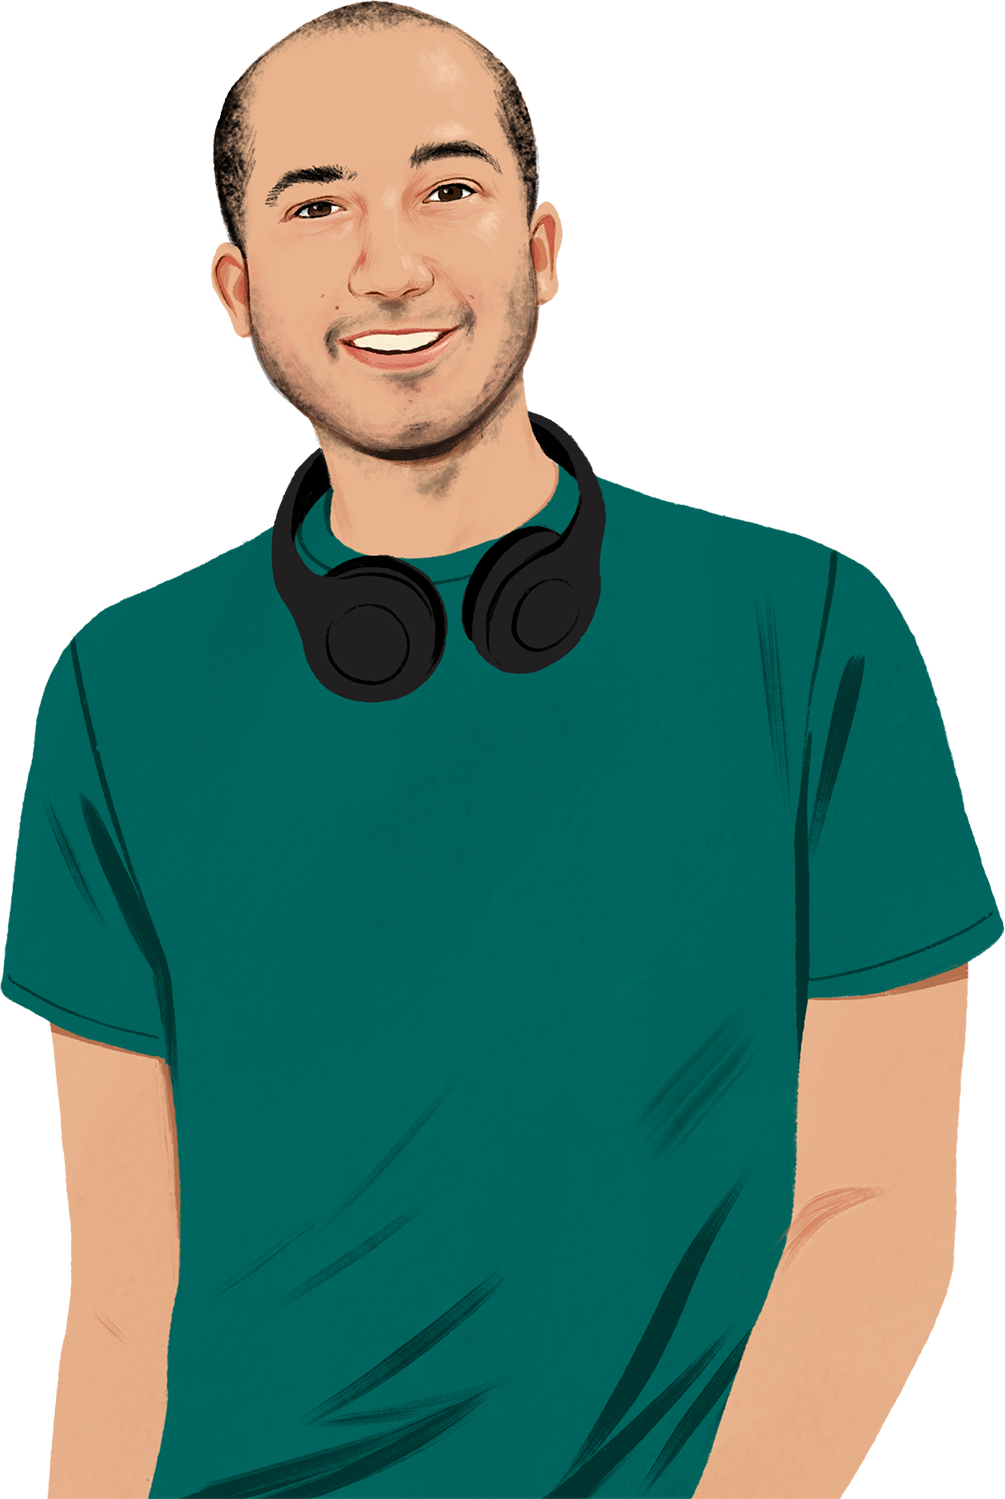 Portrait stylisé de Chris, de face, souriant, avec un casque autour du cou ; apparaît le dessin d’un iPhone en train de sonner.